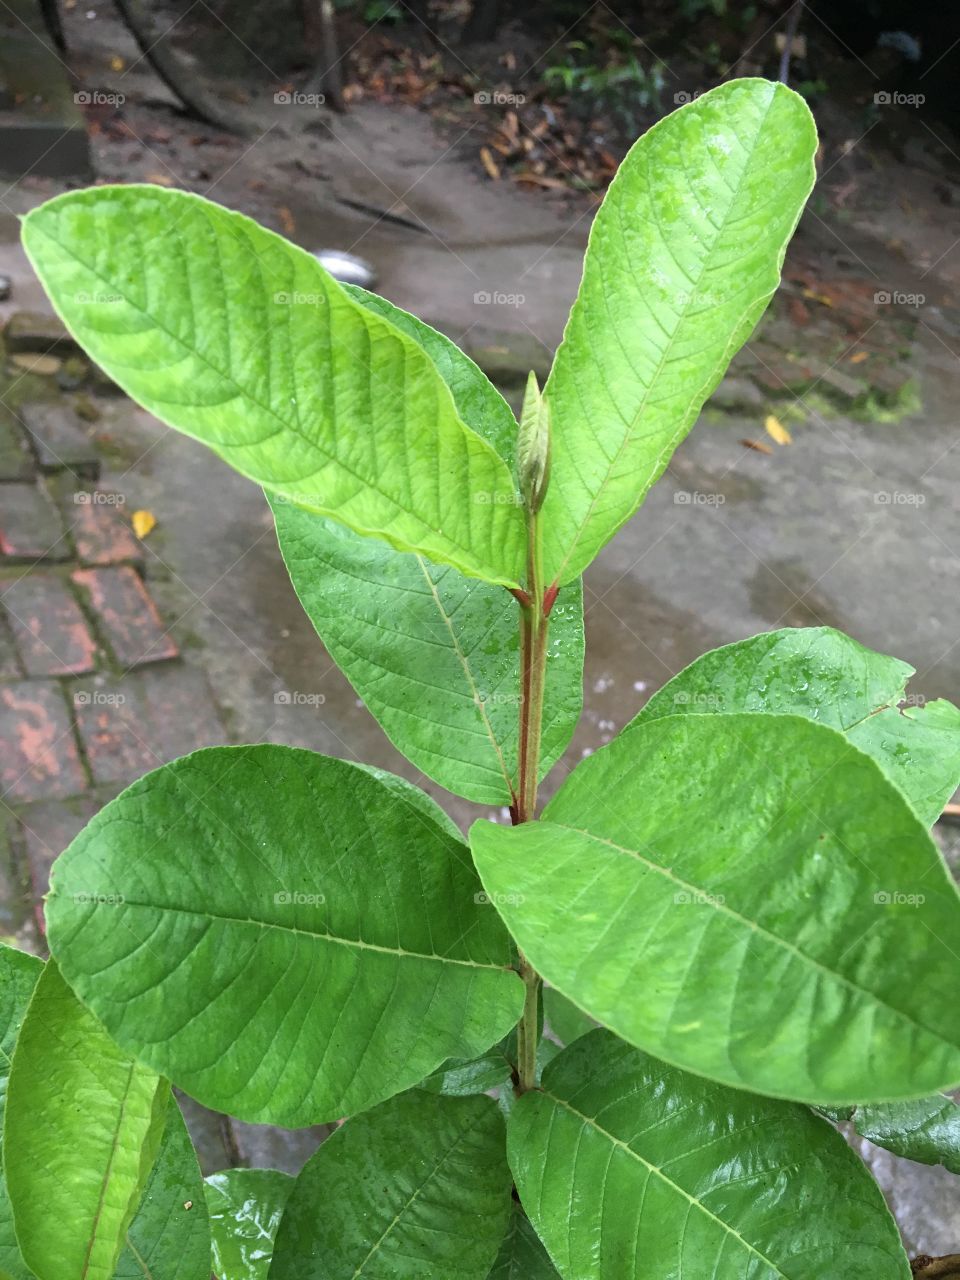 Goava leaf